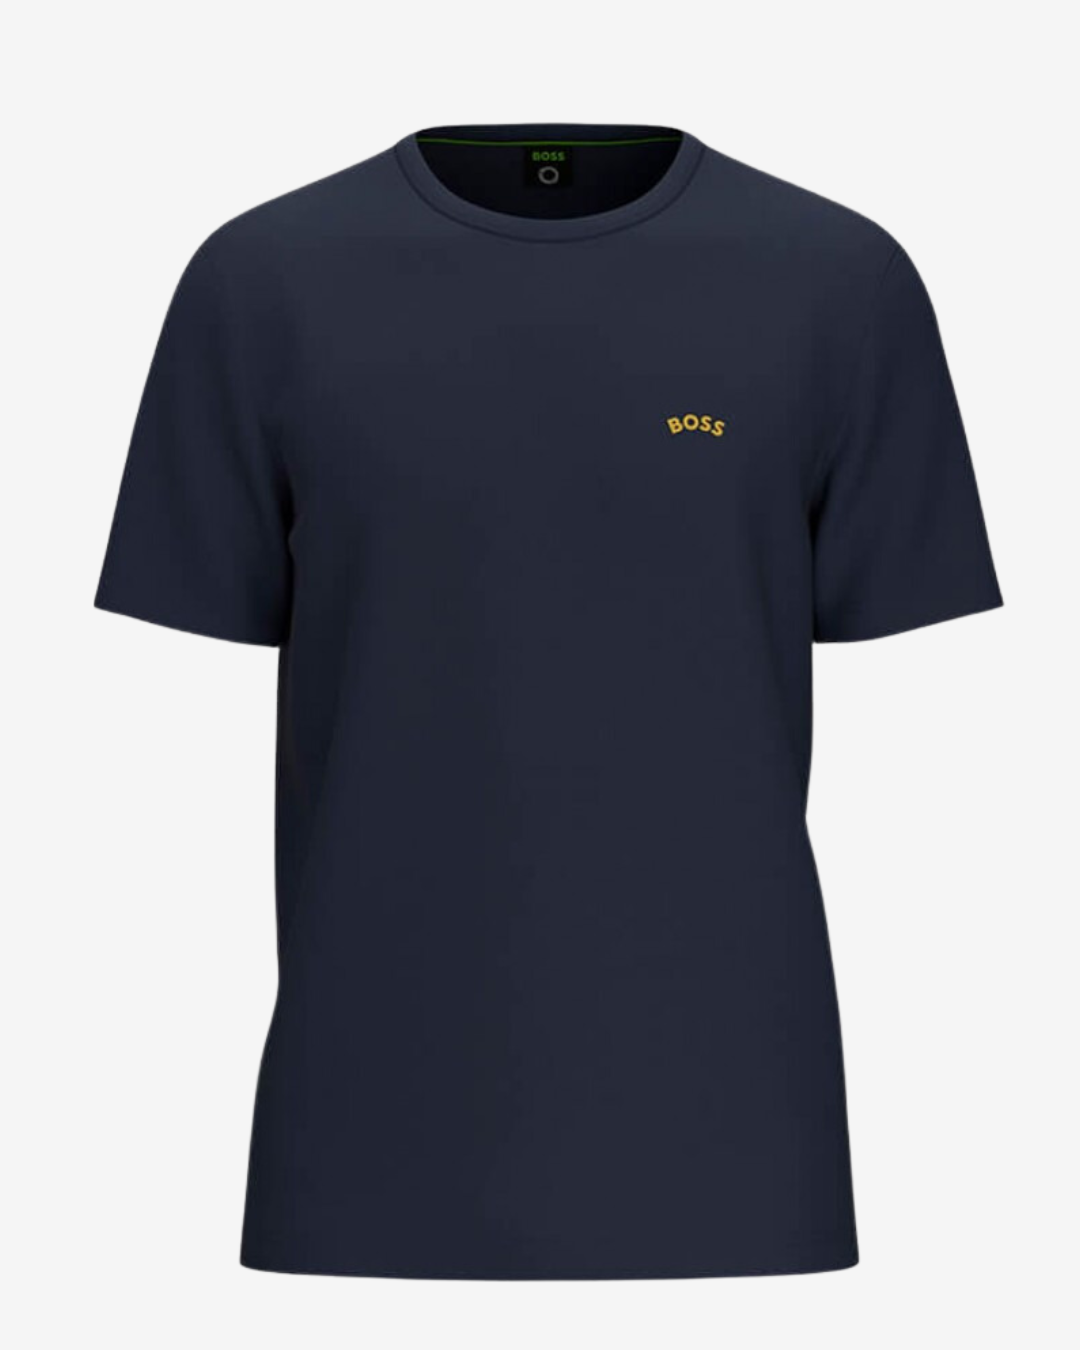 Billede af Hugo Boss Curved logo t-shirt - Navy / Guld - Str. 3XL - Modish.dk